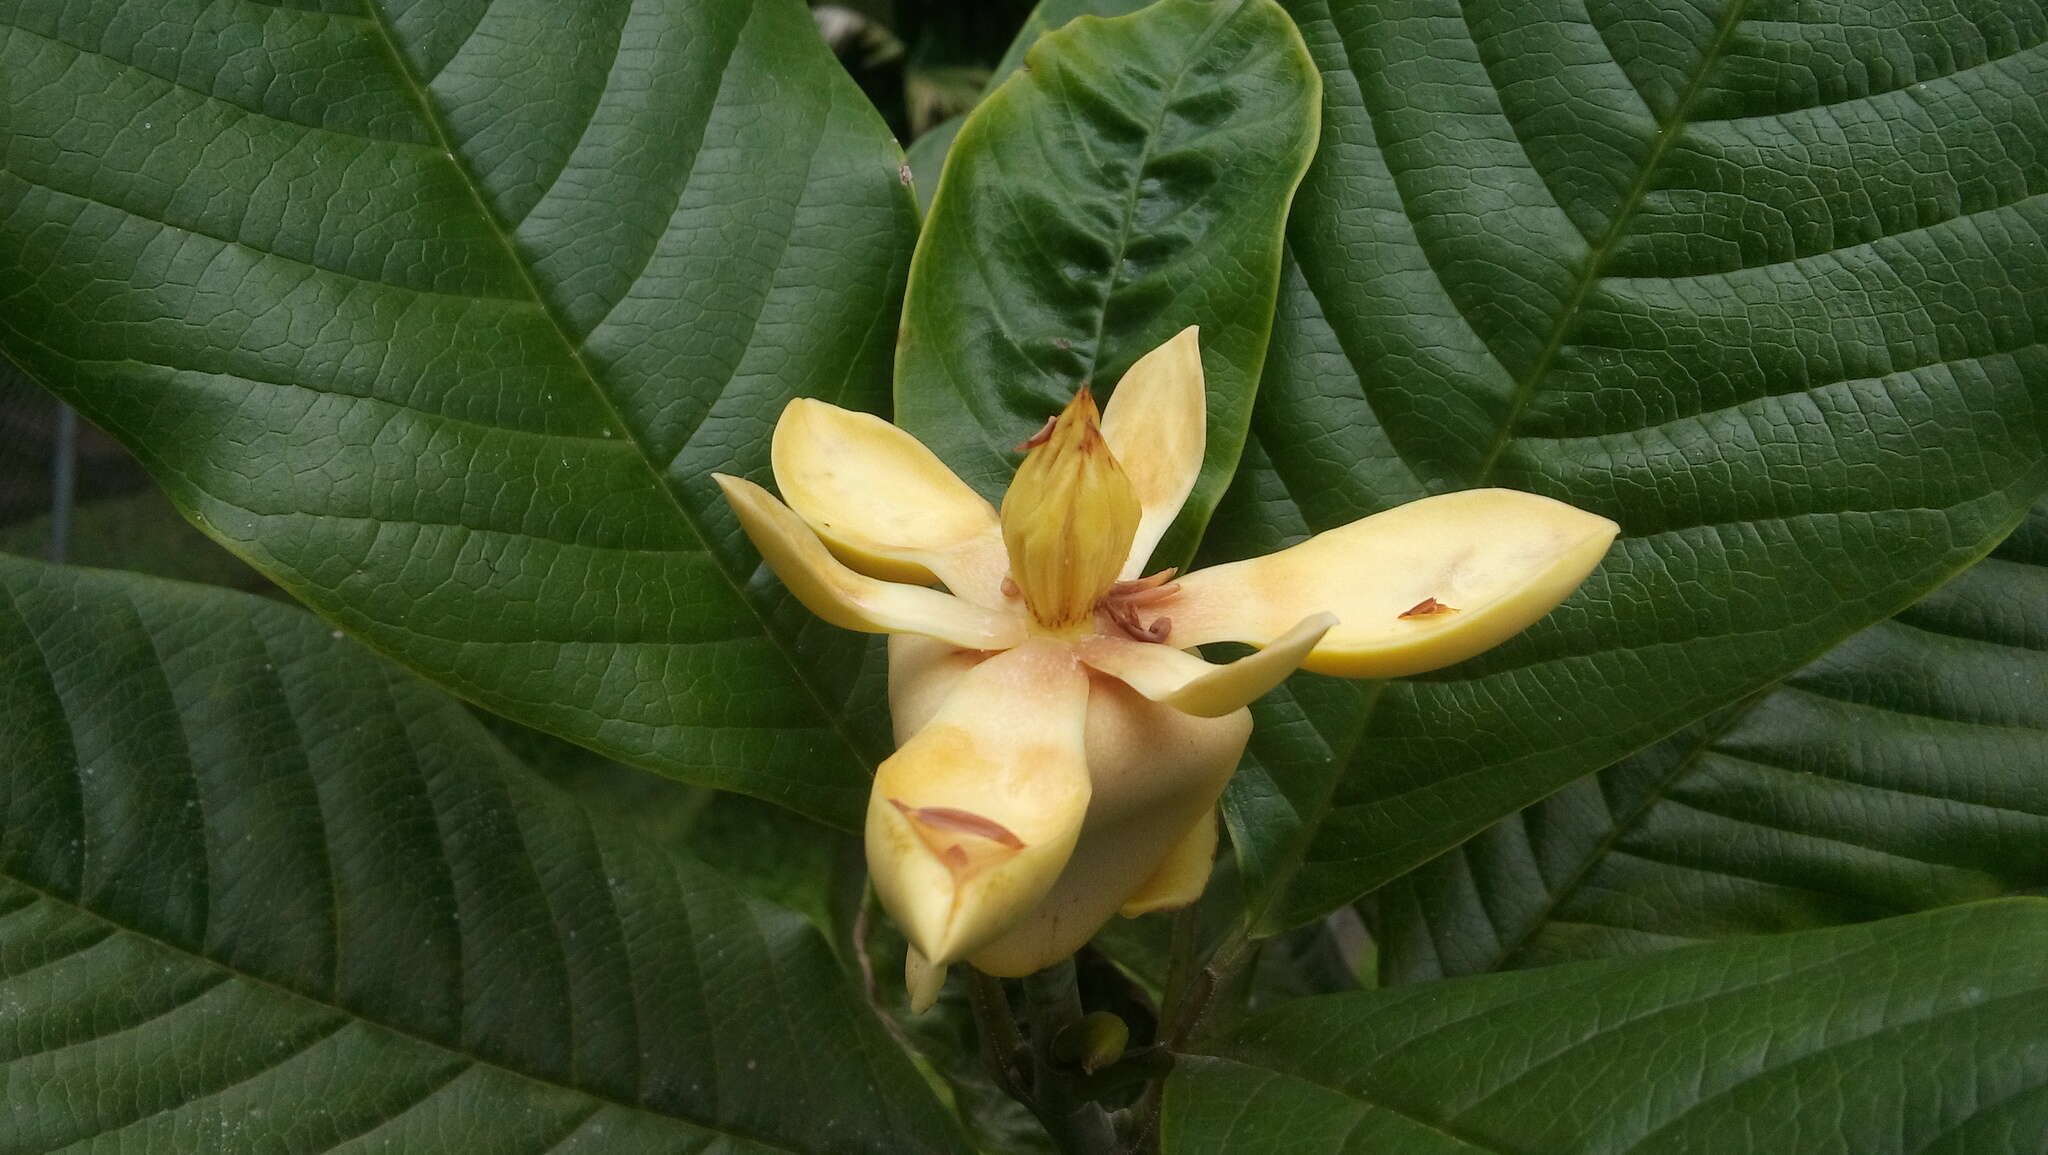 Magnolia gilbertoi (Lozano) Govaerts的圖片